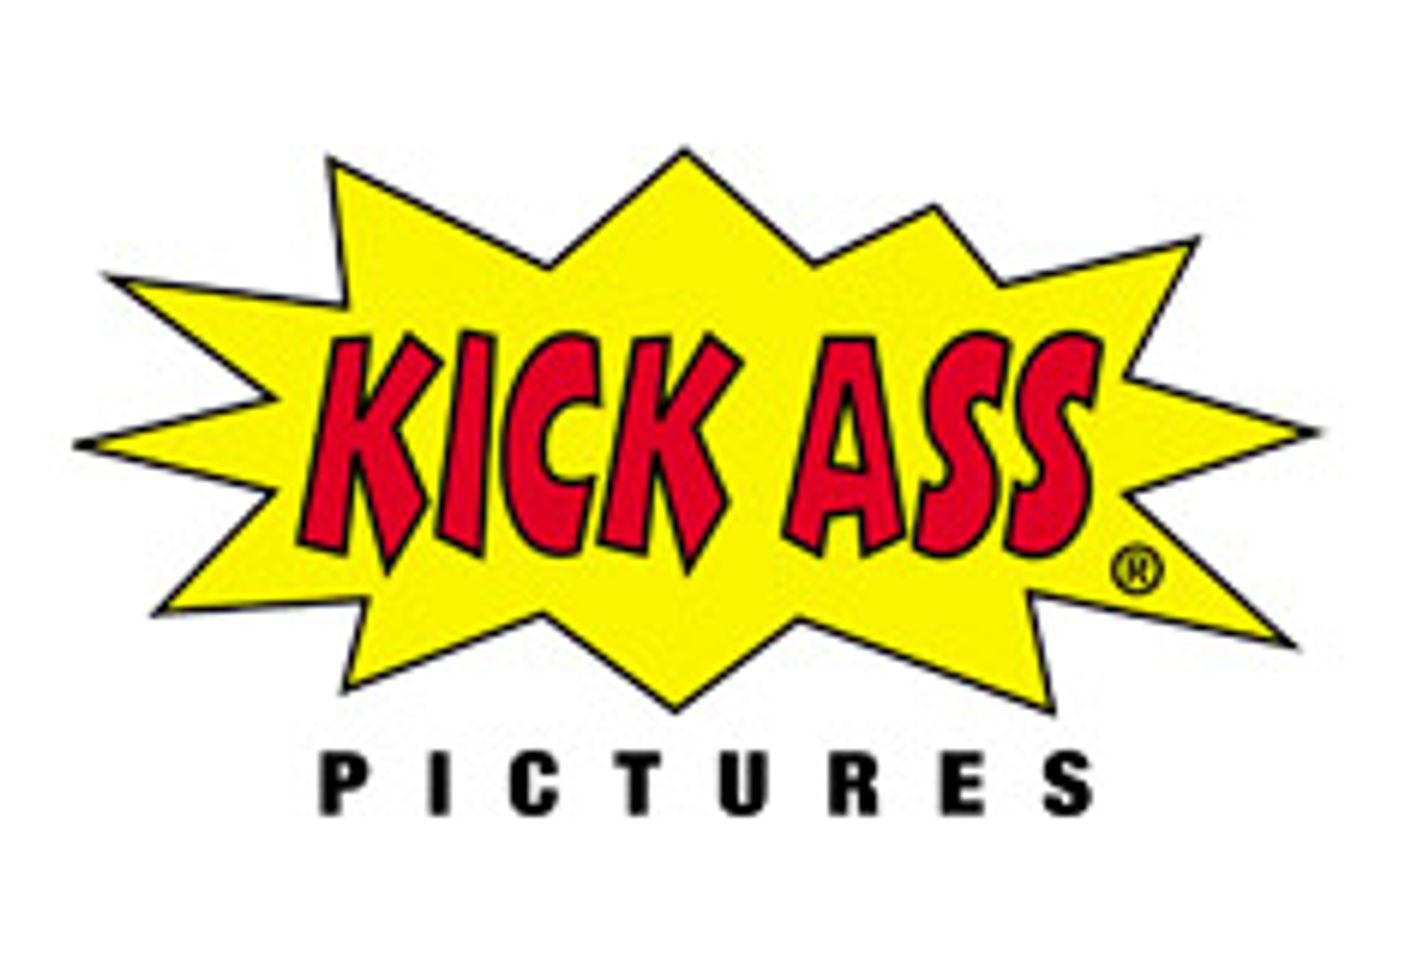 Kick Ass Pictures to Distribute ATKingdom.com DVD Line